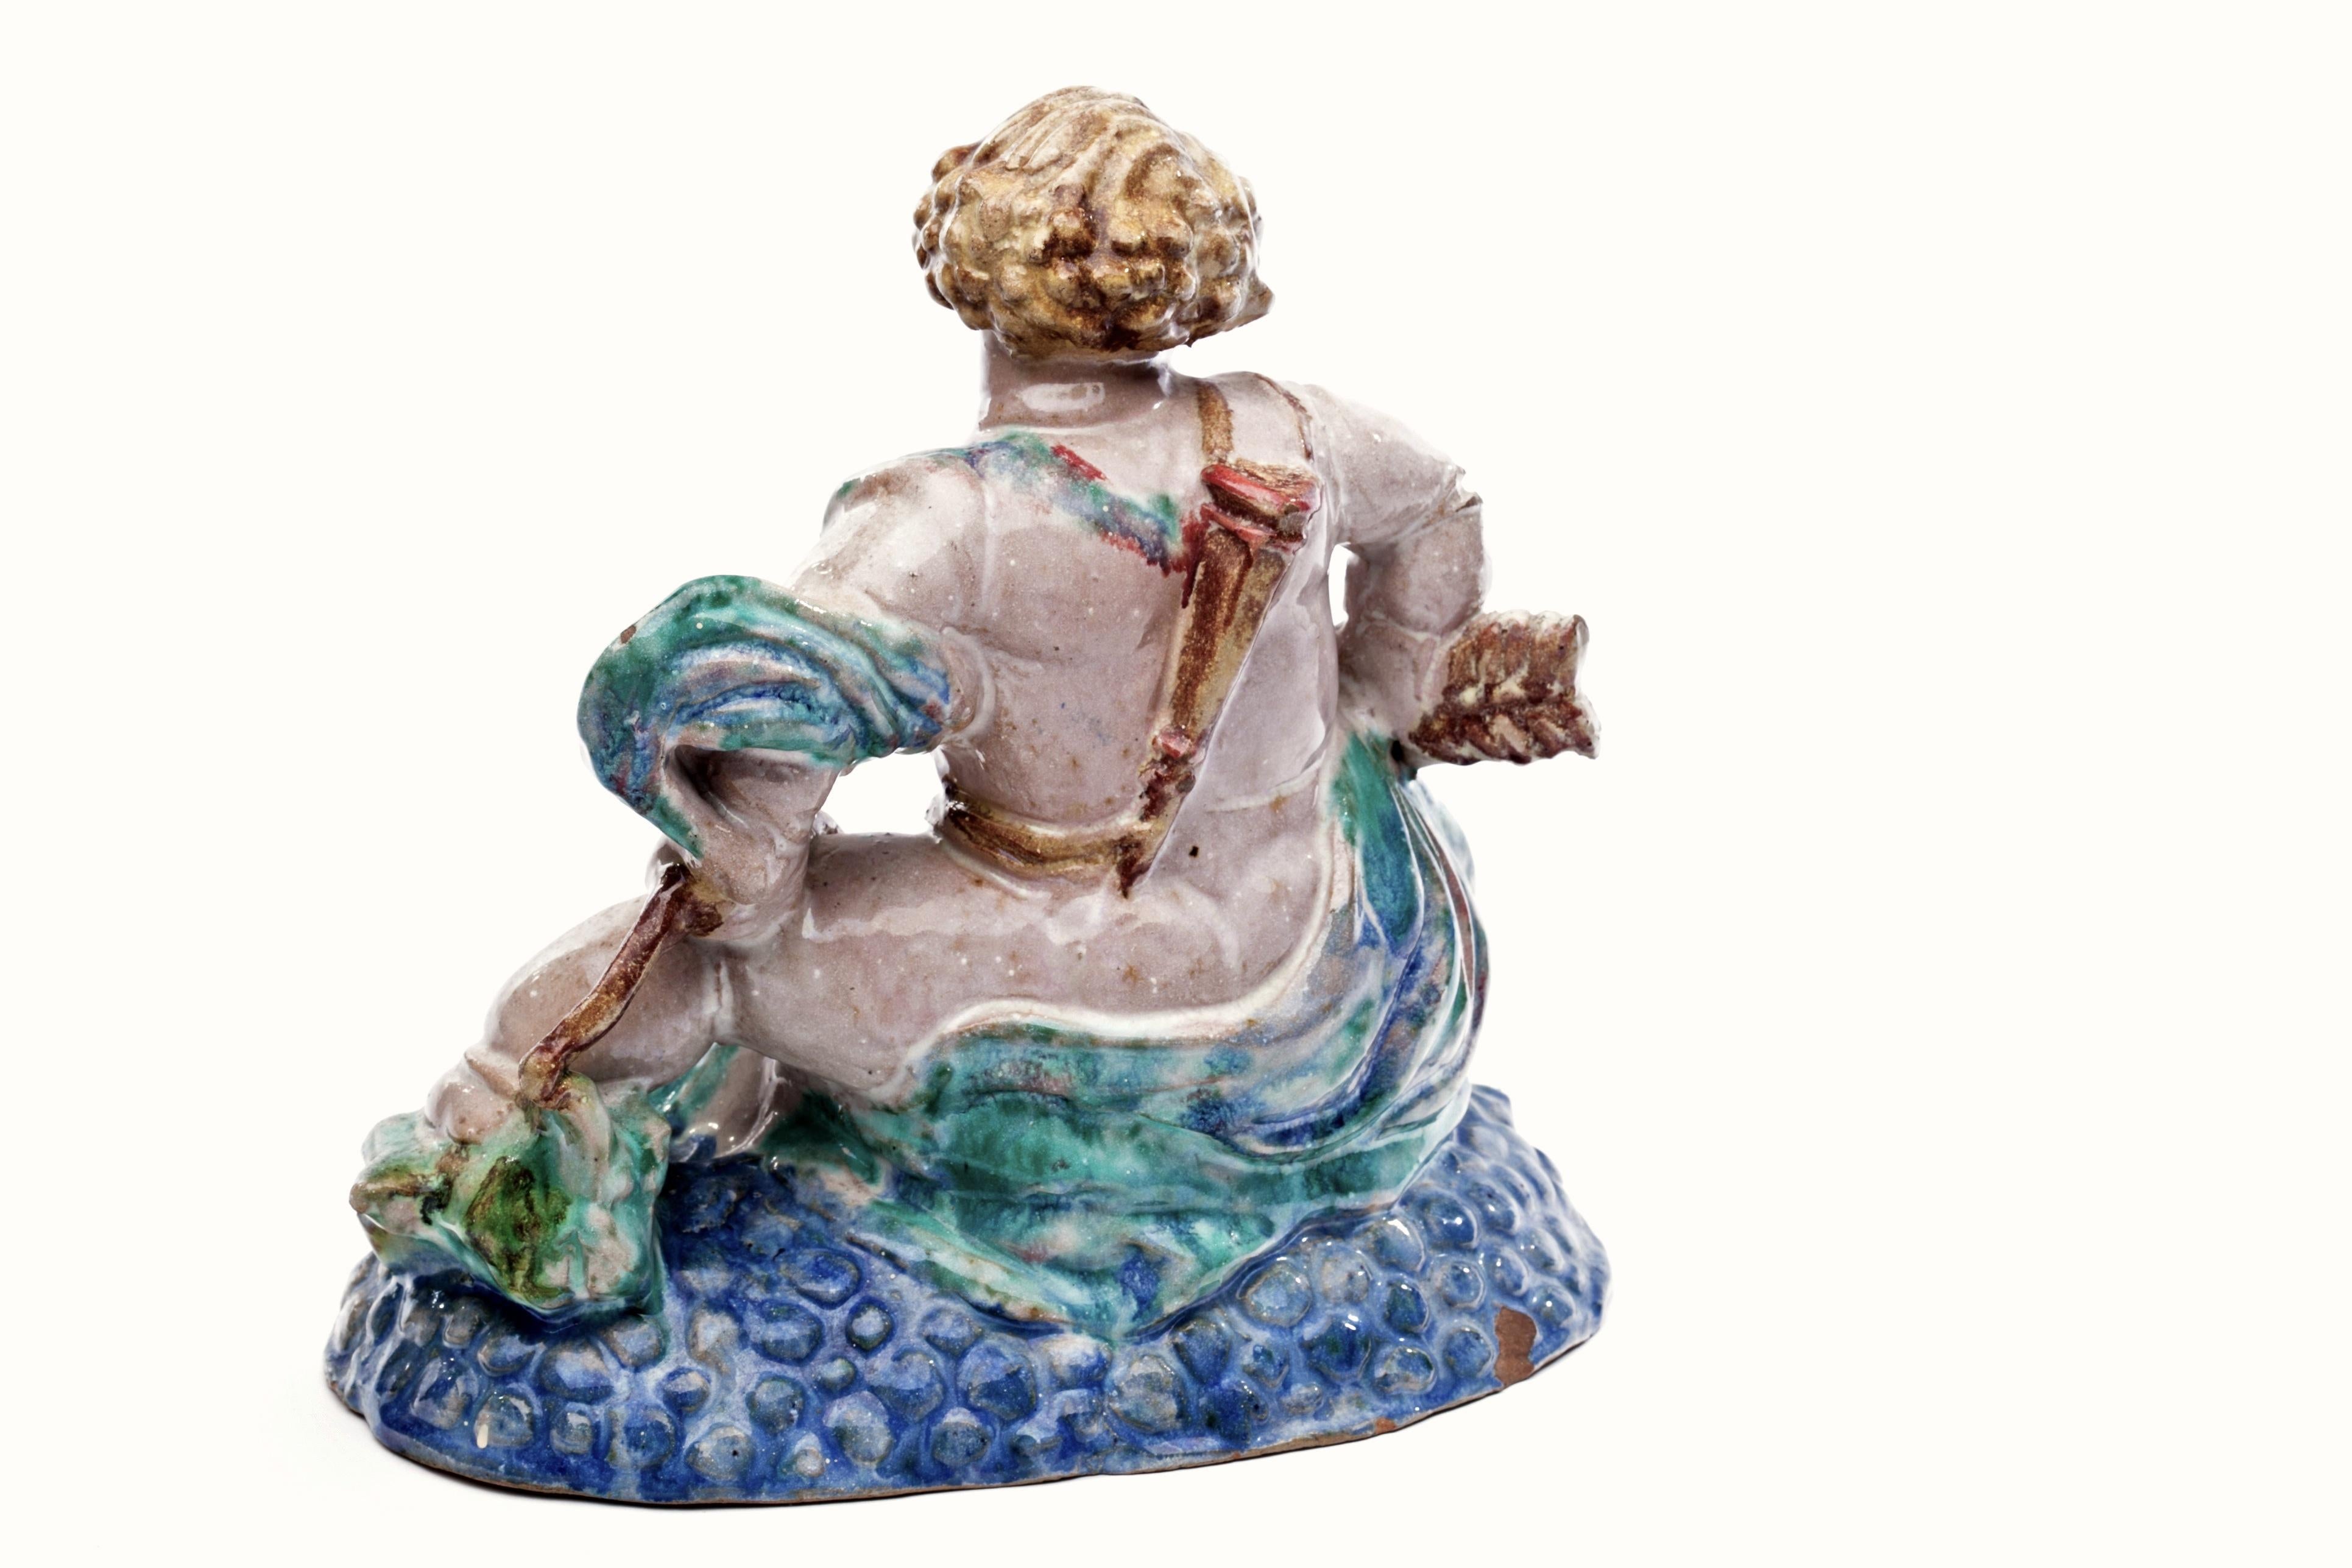 Außergewöhnlicher österreichischer Putto im Stil von Michael Powolny mit Bogen, Pfeil und Köcher auf dem Rücken, der auf einem bunten Bett aus blauen Seifenblasen sitzt. Prächtige Skulptur aus Steinzeug mit reichhaltigen und doch subtilen Glasuren.